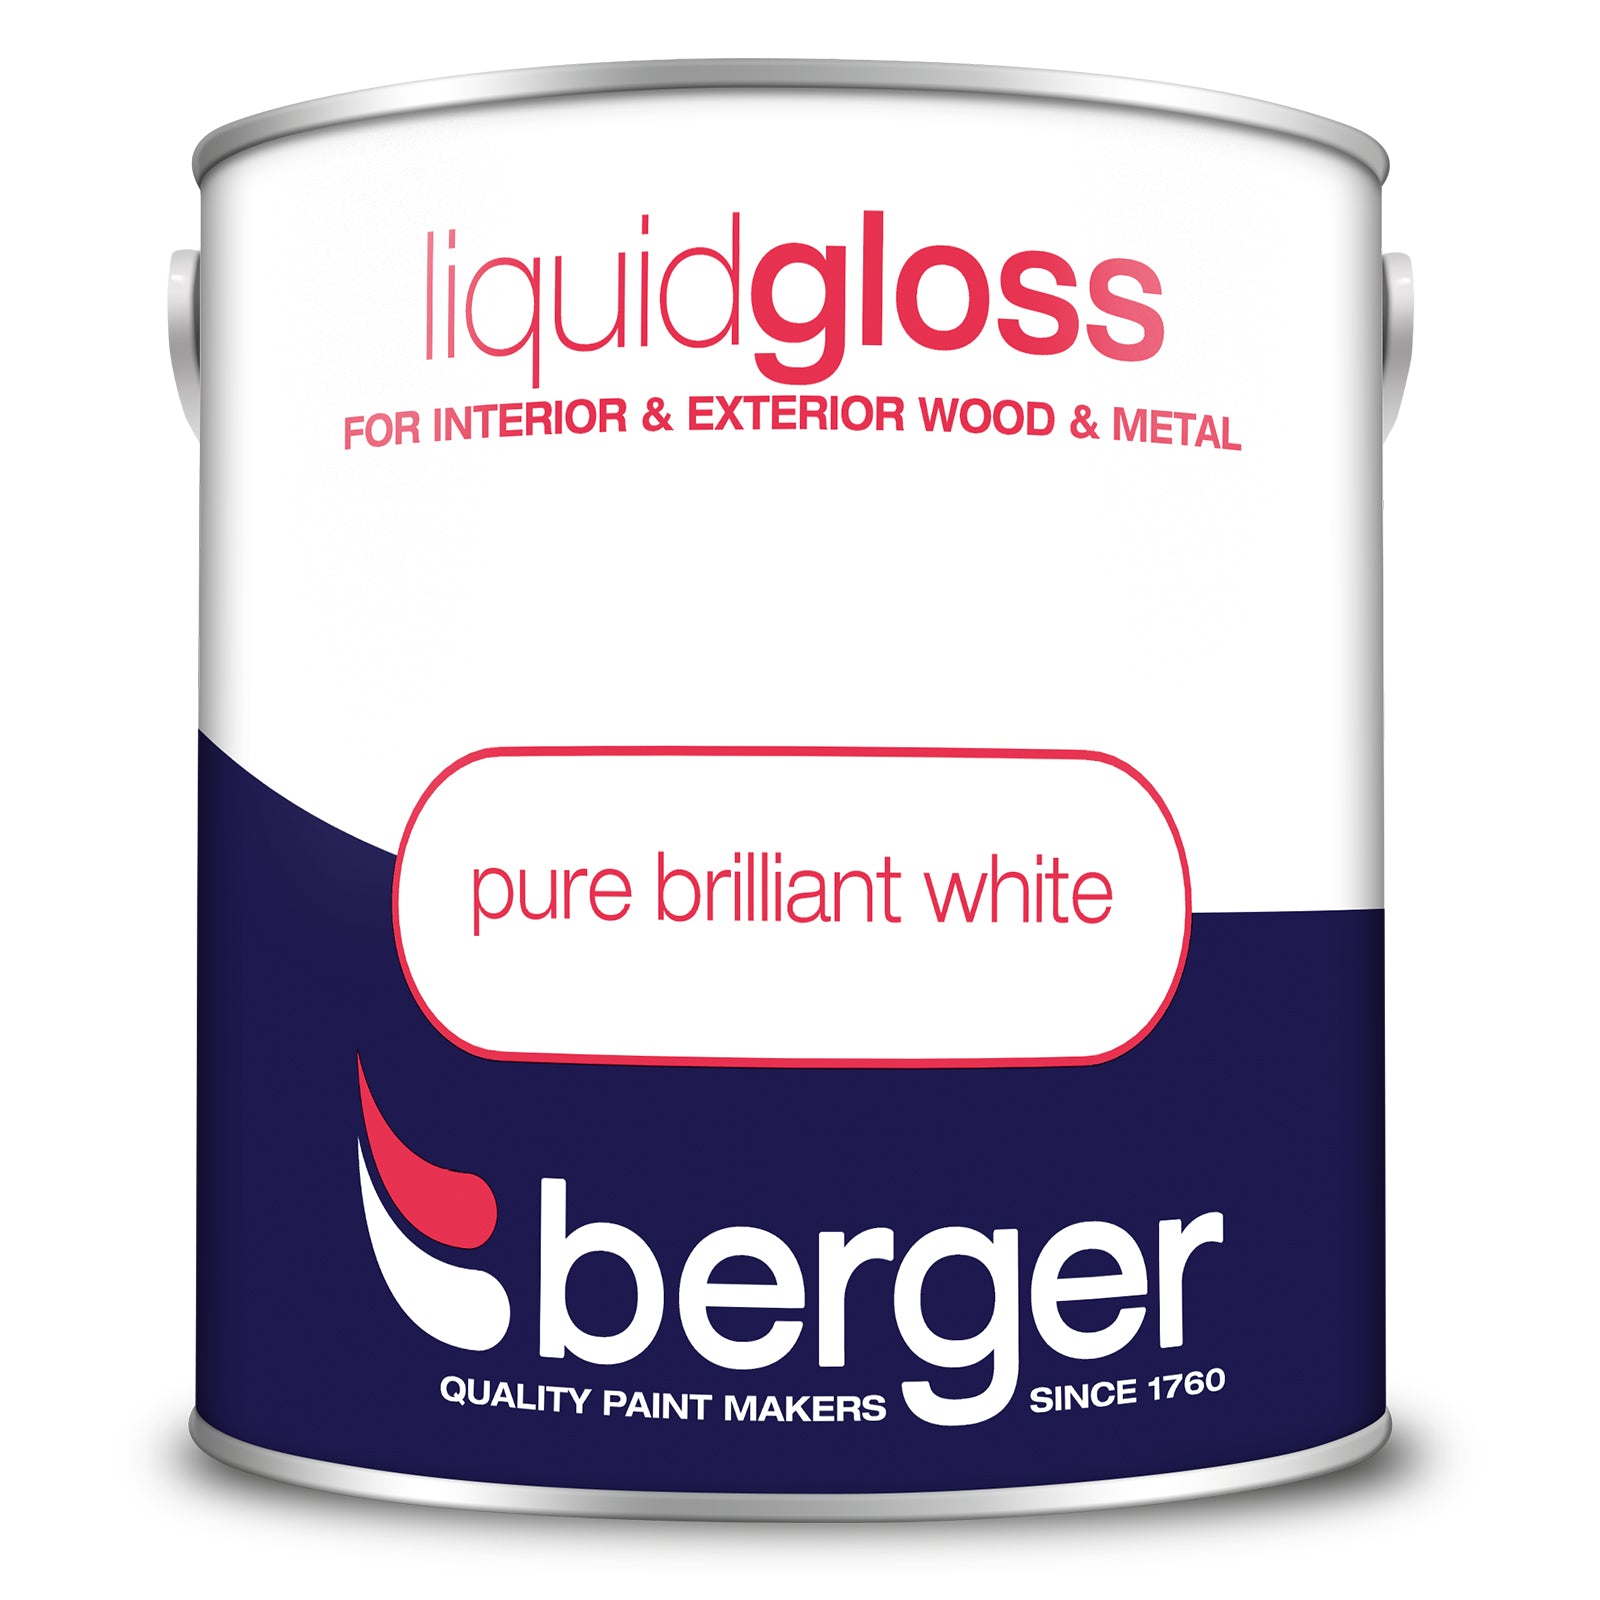 Berger Liquid Gloss Pure Brilliant White 2.5L